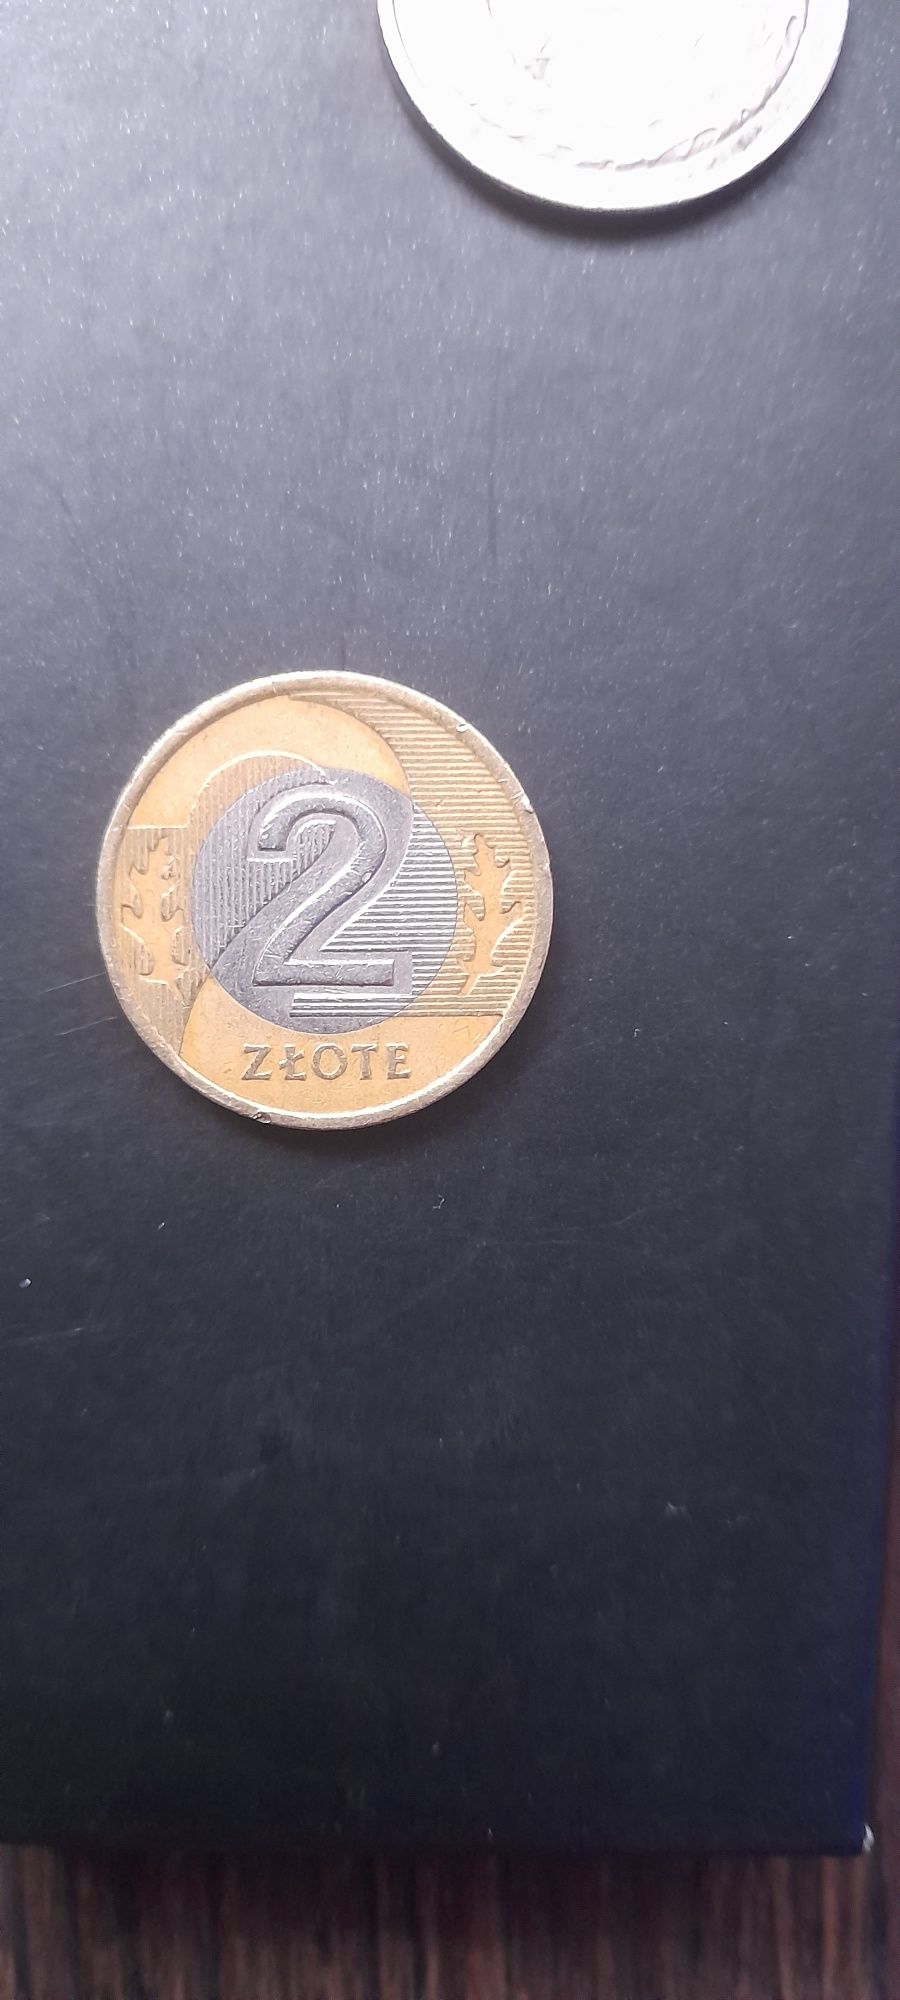 Moneta 2zlote z 1995 roku